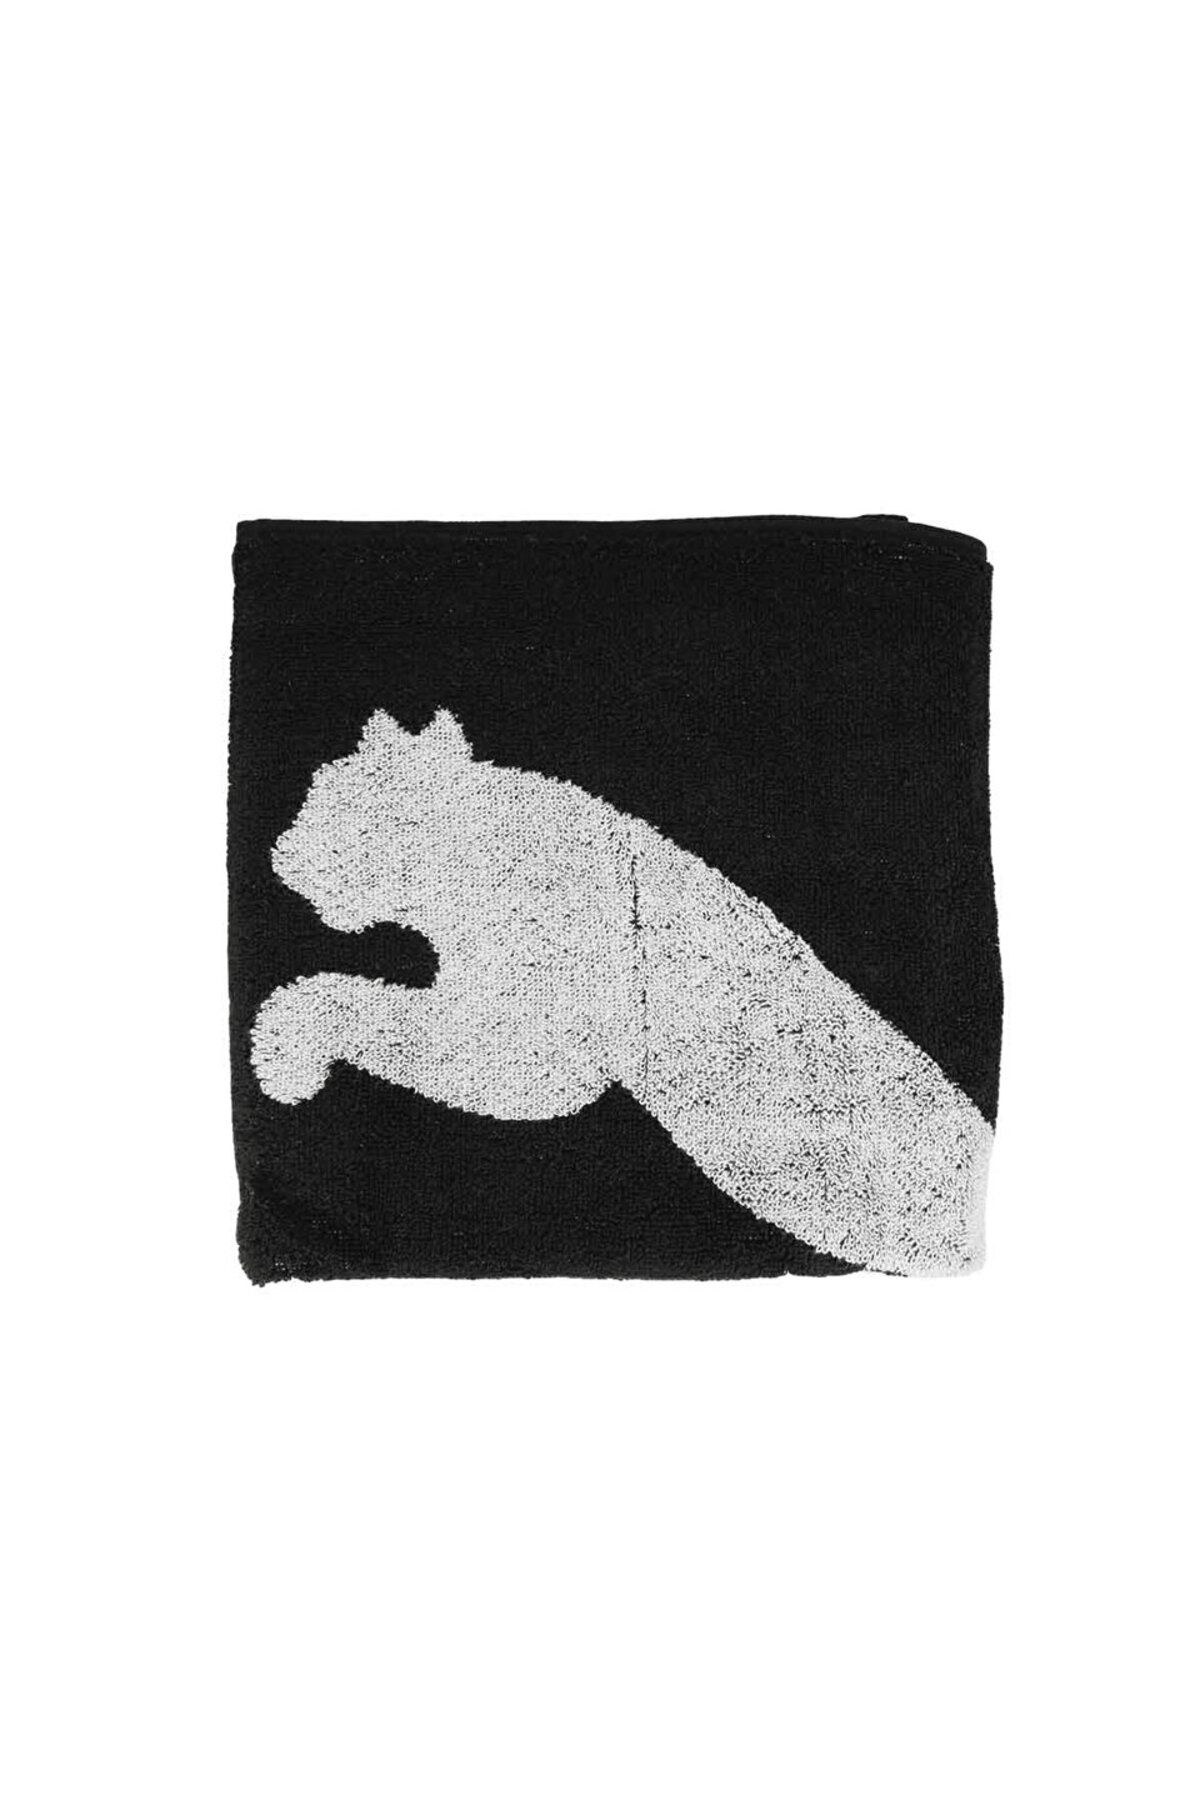 Puma Team Towel Small (50X100) Havlu 5455301 Siyah